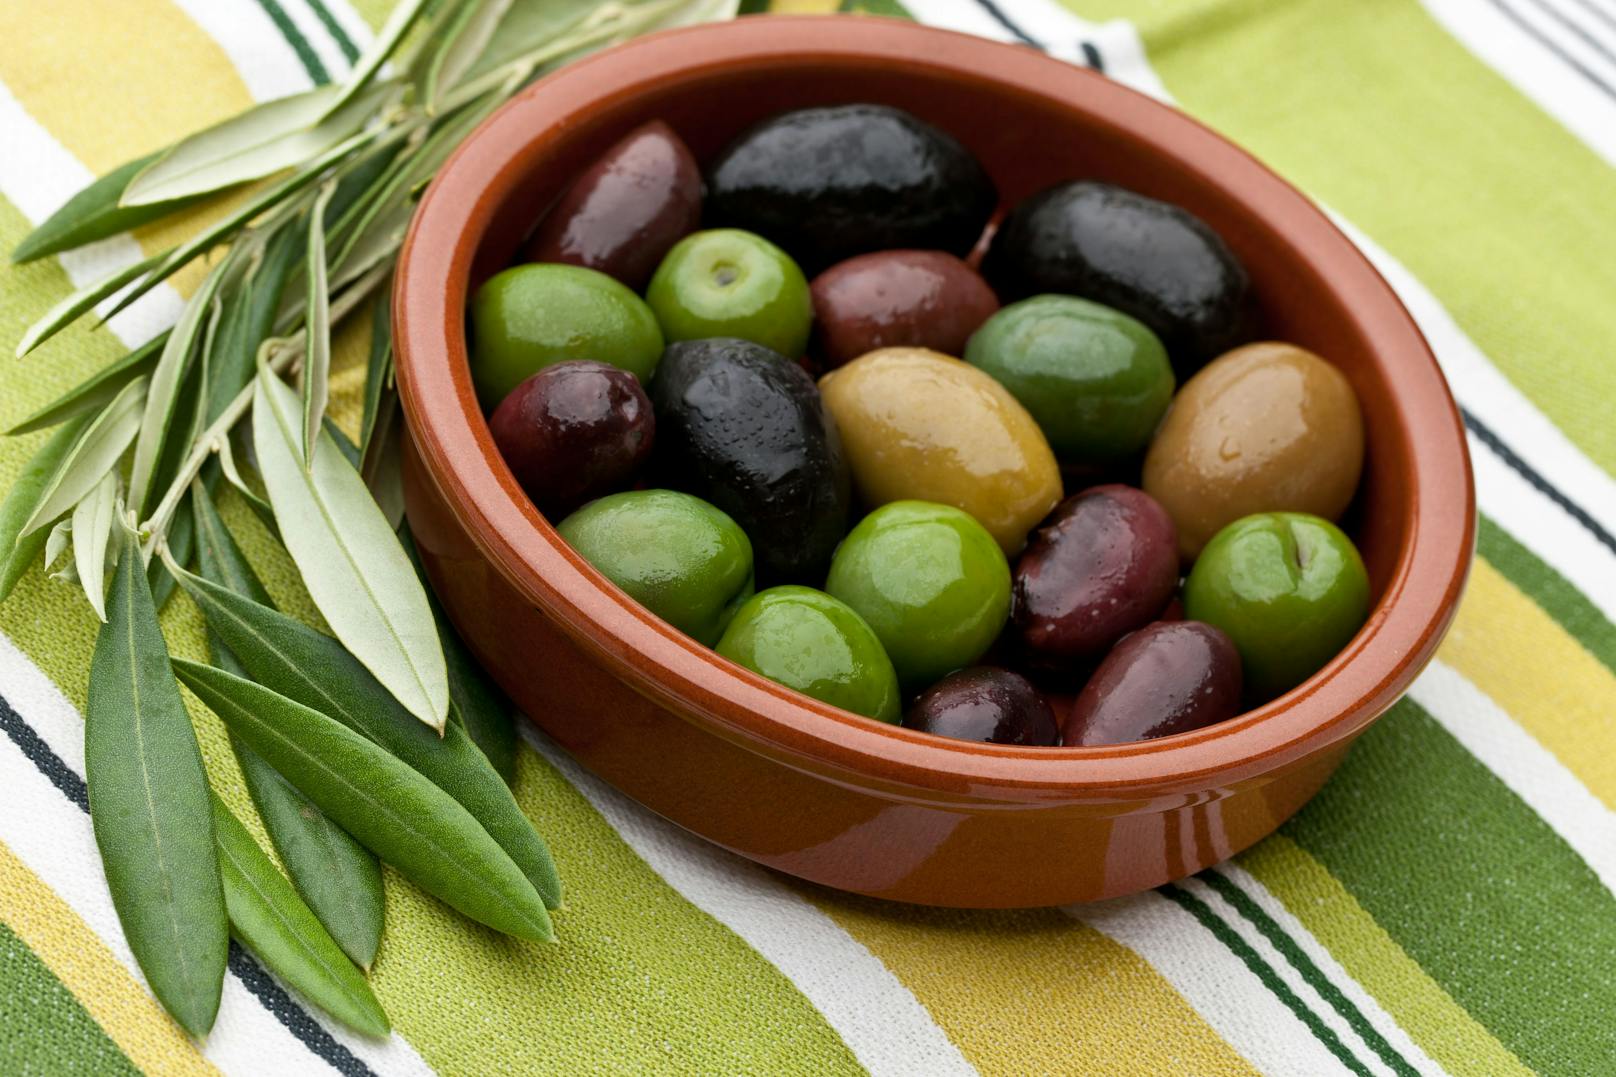 Kaum zu glauben, aber wurden Oliven künstlich gefärbt, können sie Krebs erregen.